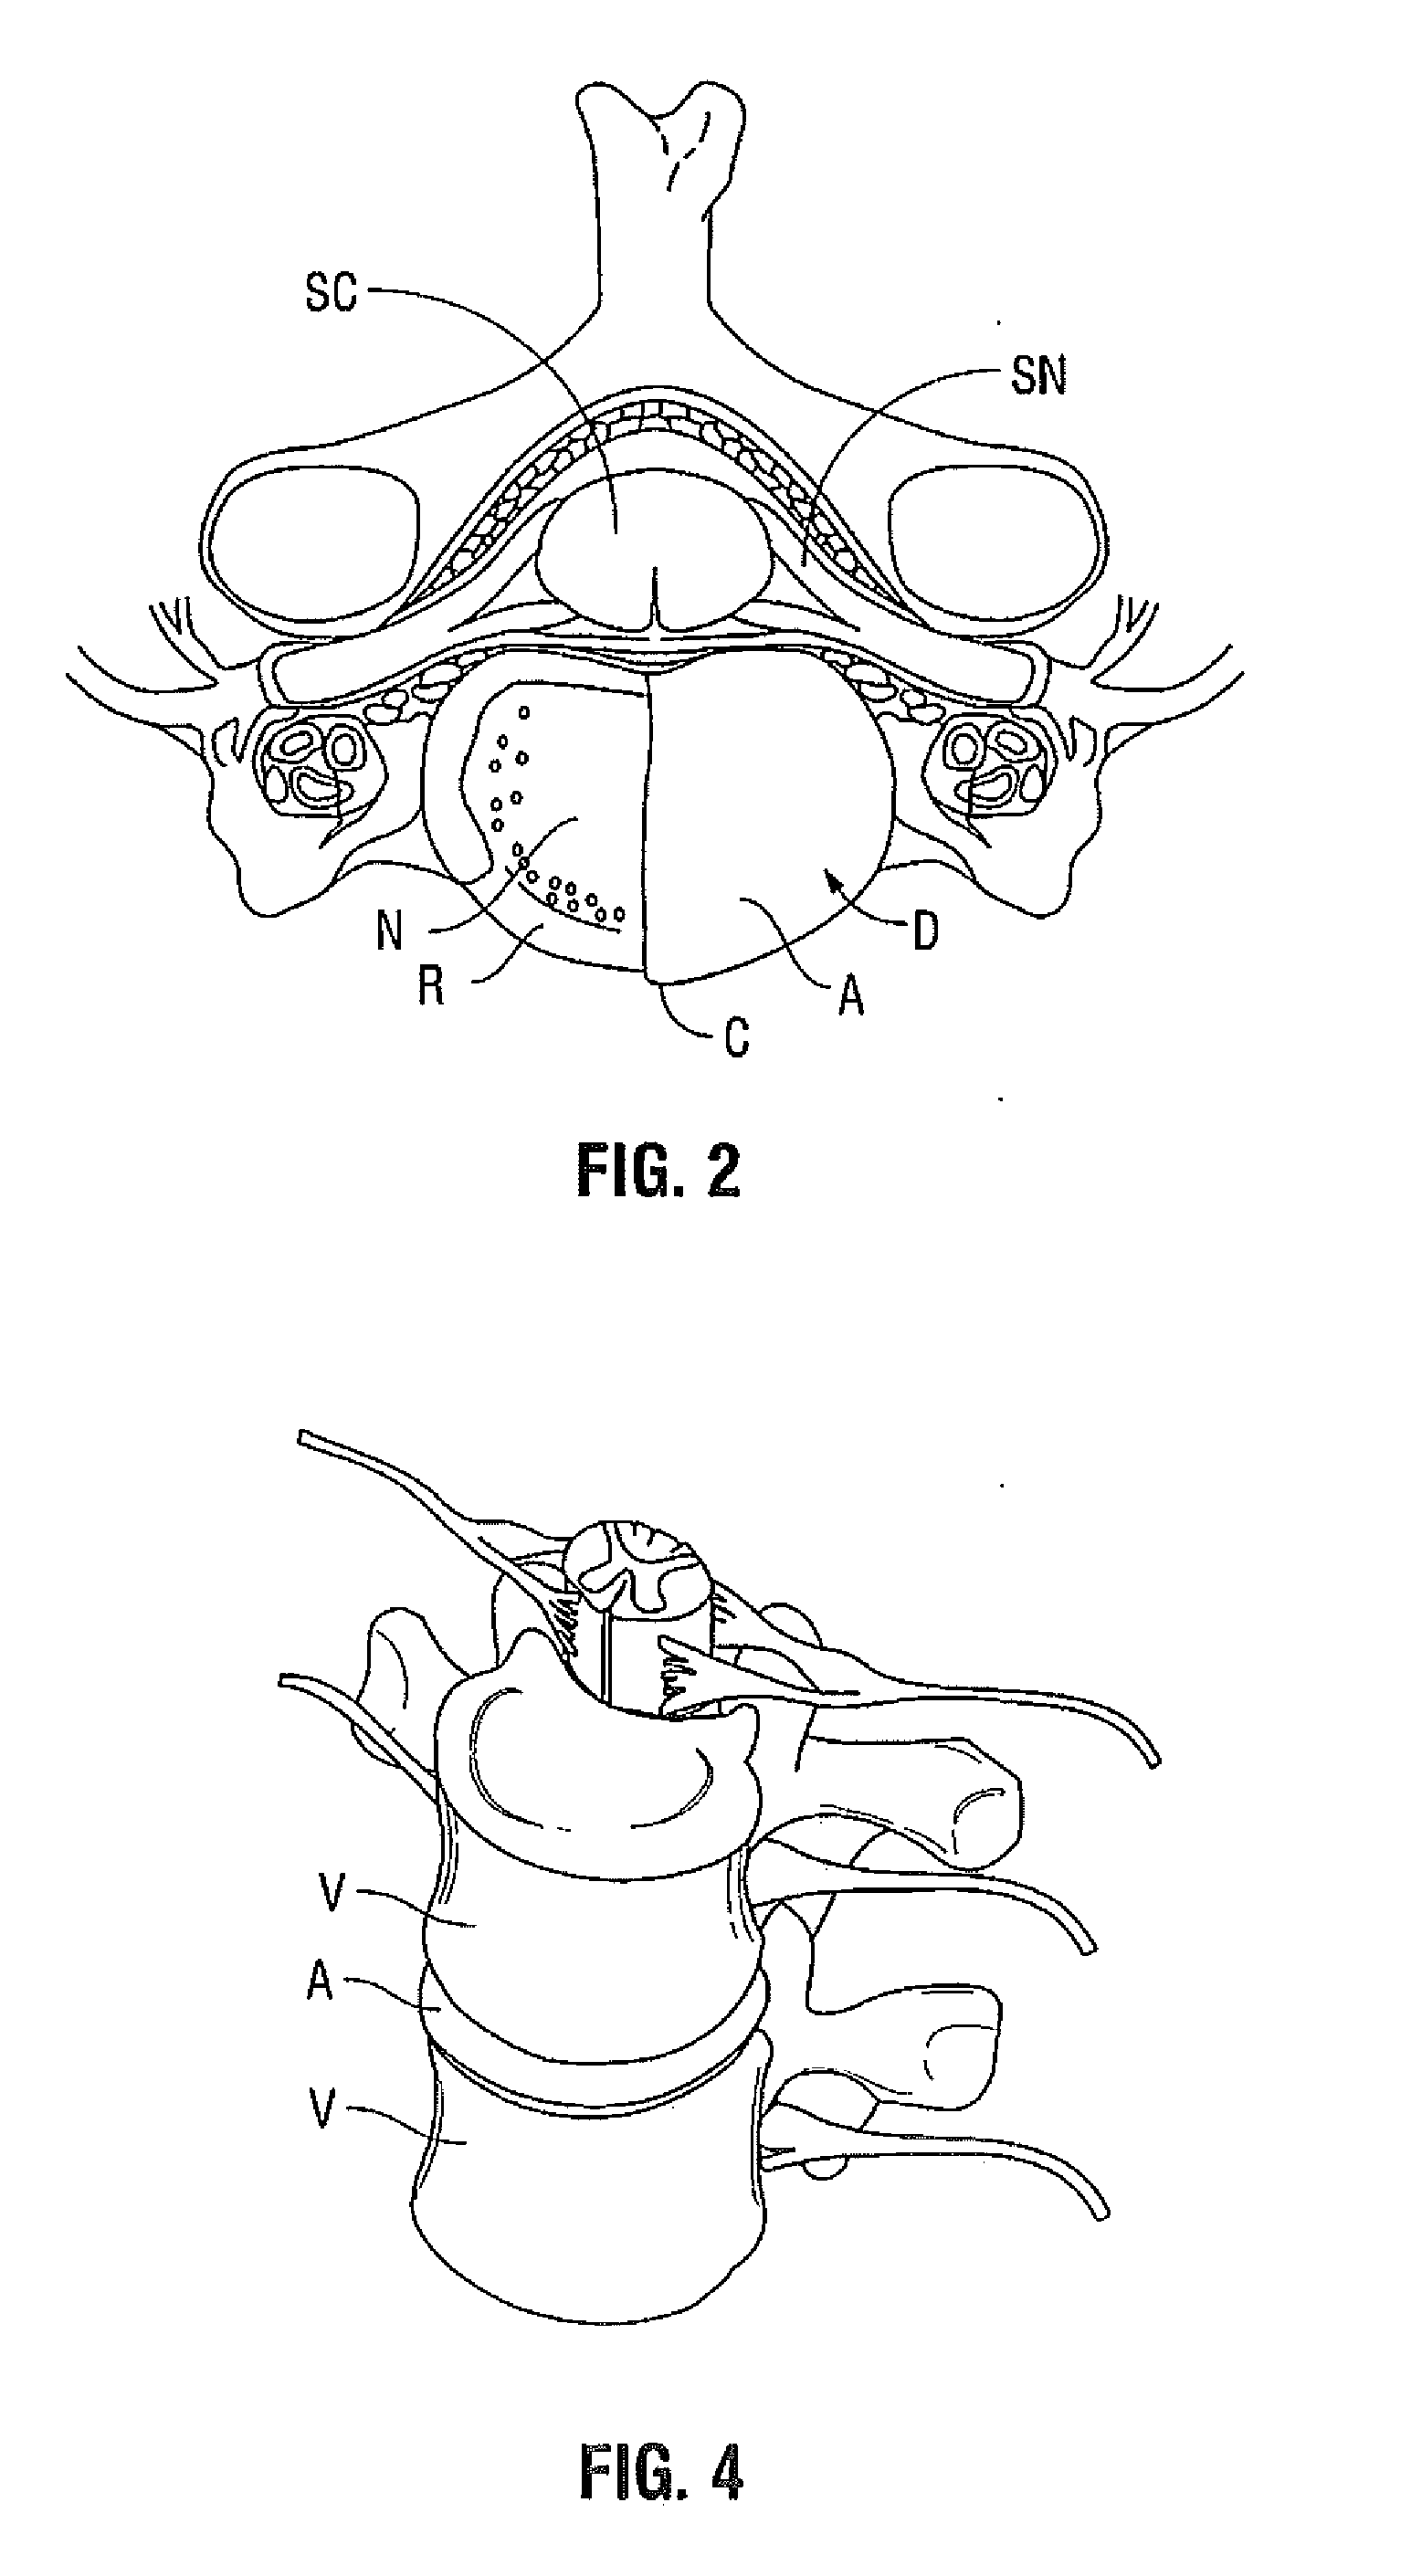 Method for Treatment of an Intervertebral Disc